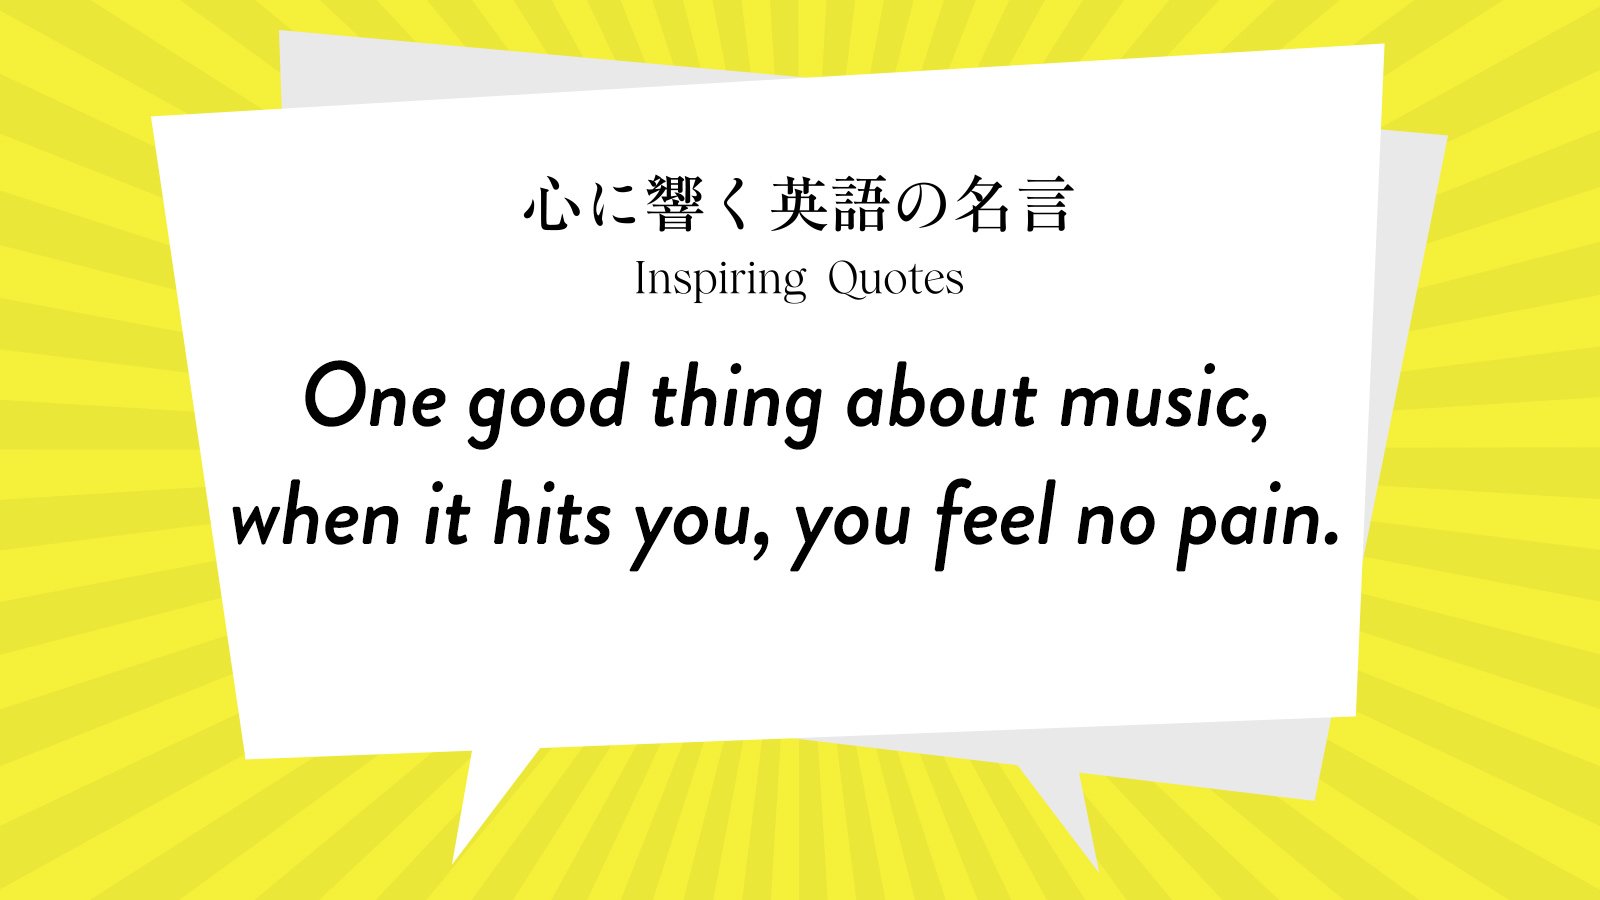 今週の名言 “One good thing about music, when it hits you, you feel no pain.” | Inspiring Quotes: 心に響く英語の名言